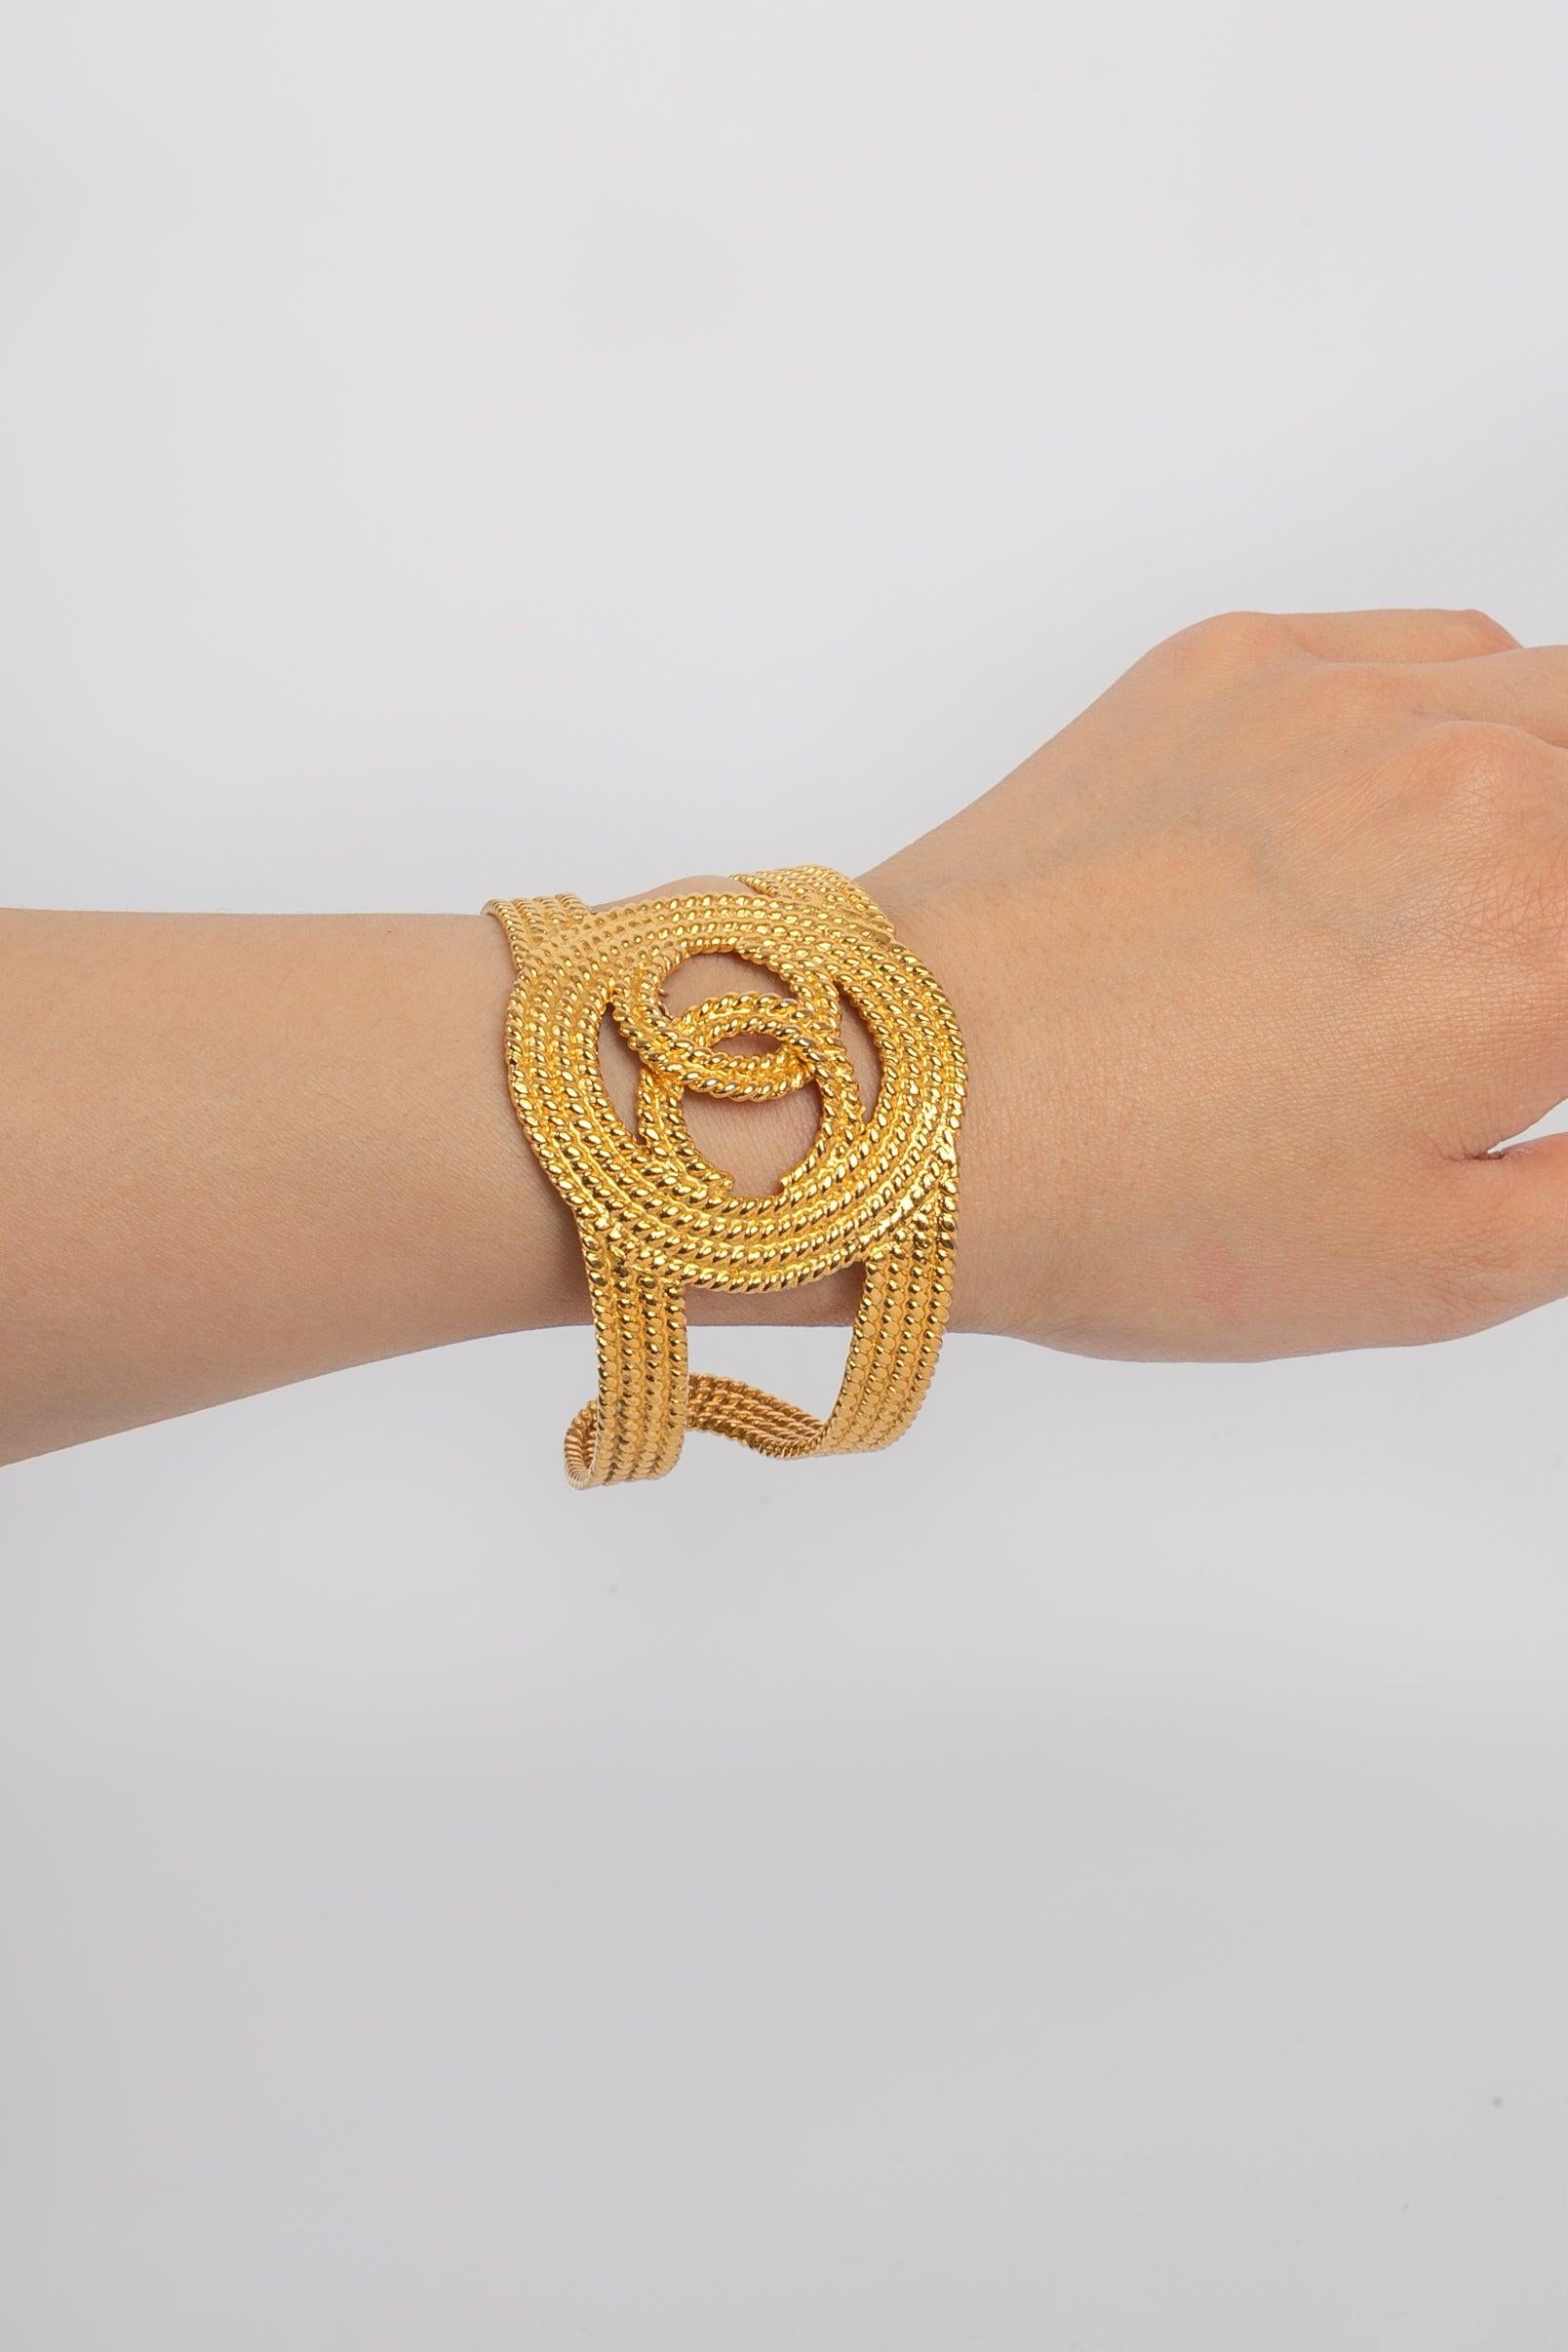 Chanel Openwork Golden Emtal Cuff Bracelet, 2008 For Sale 2